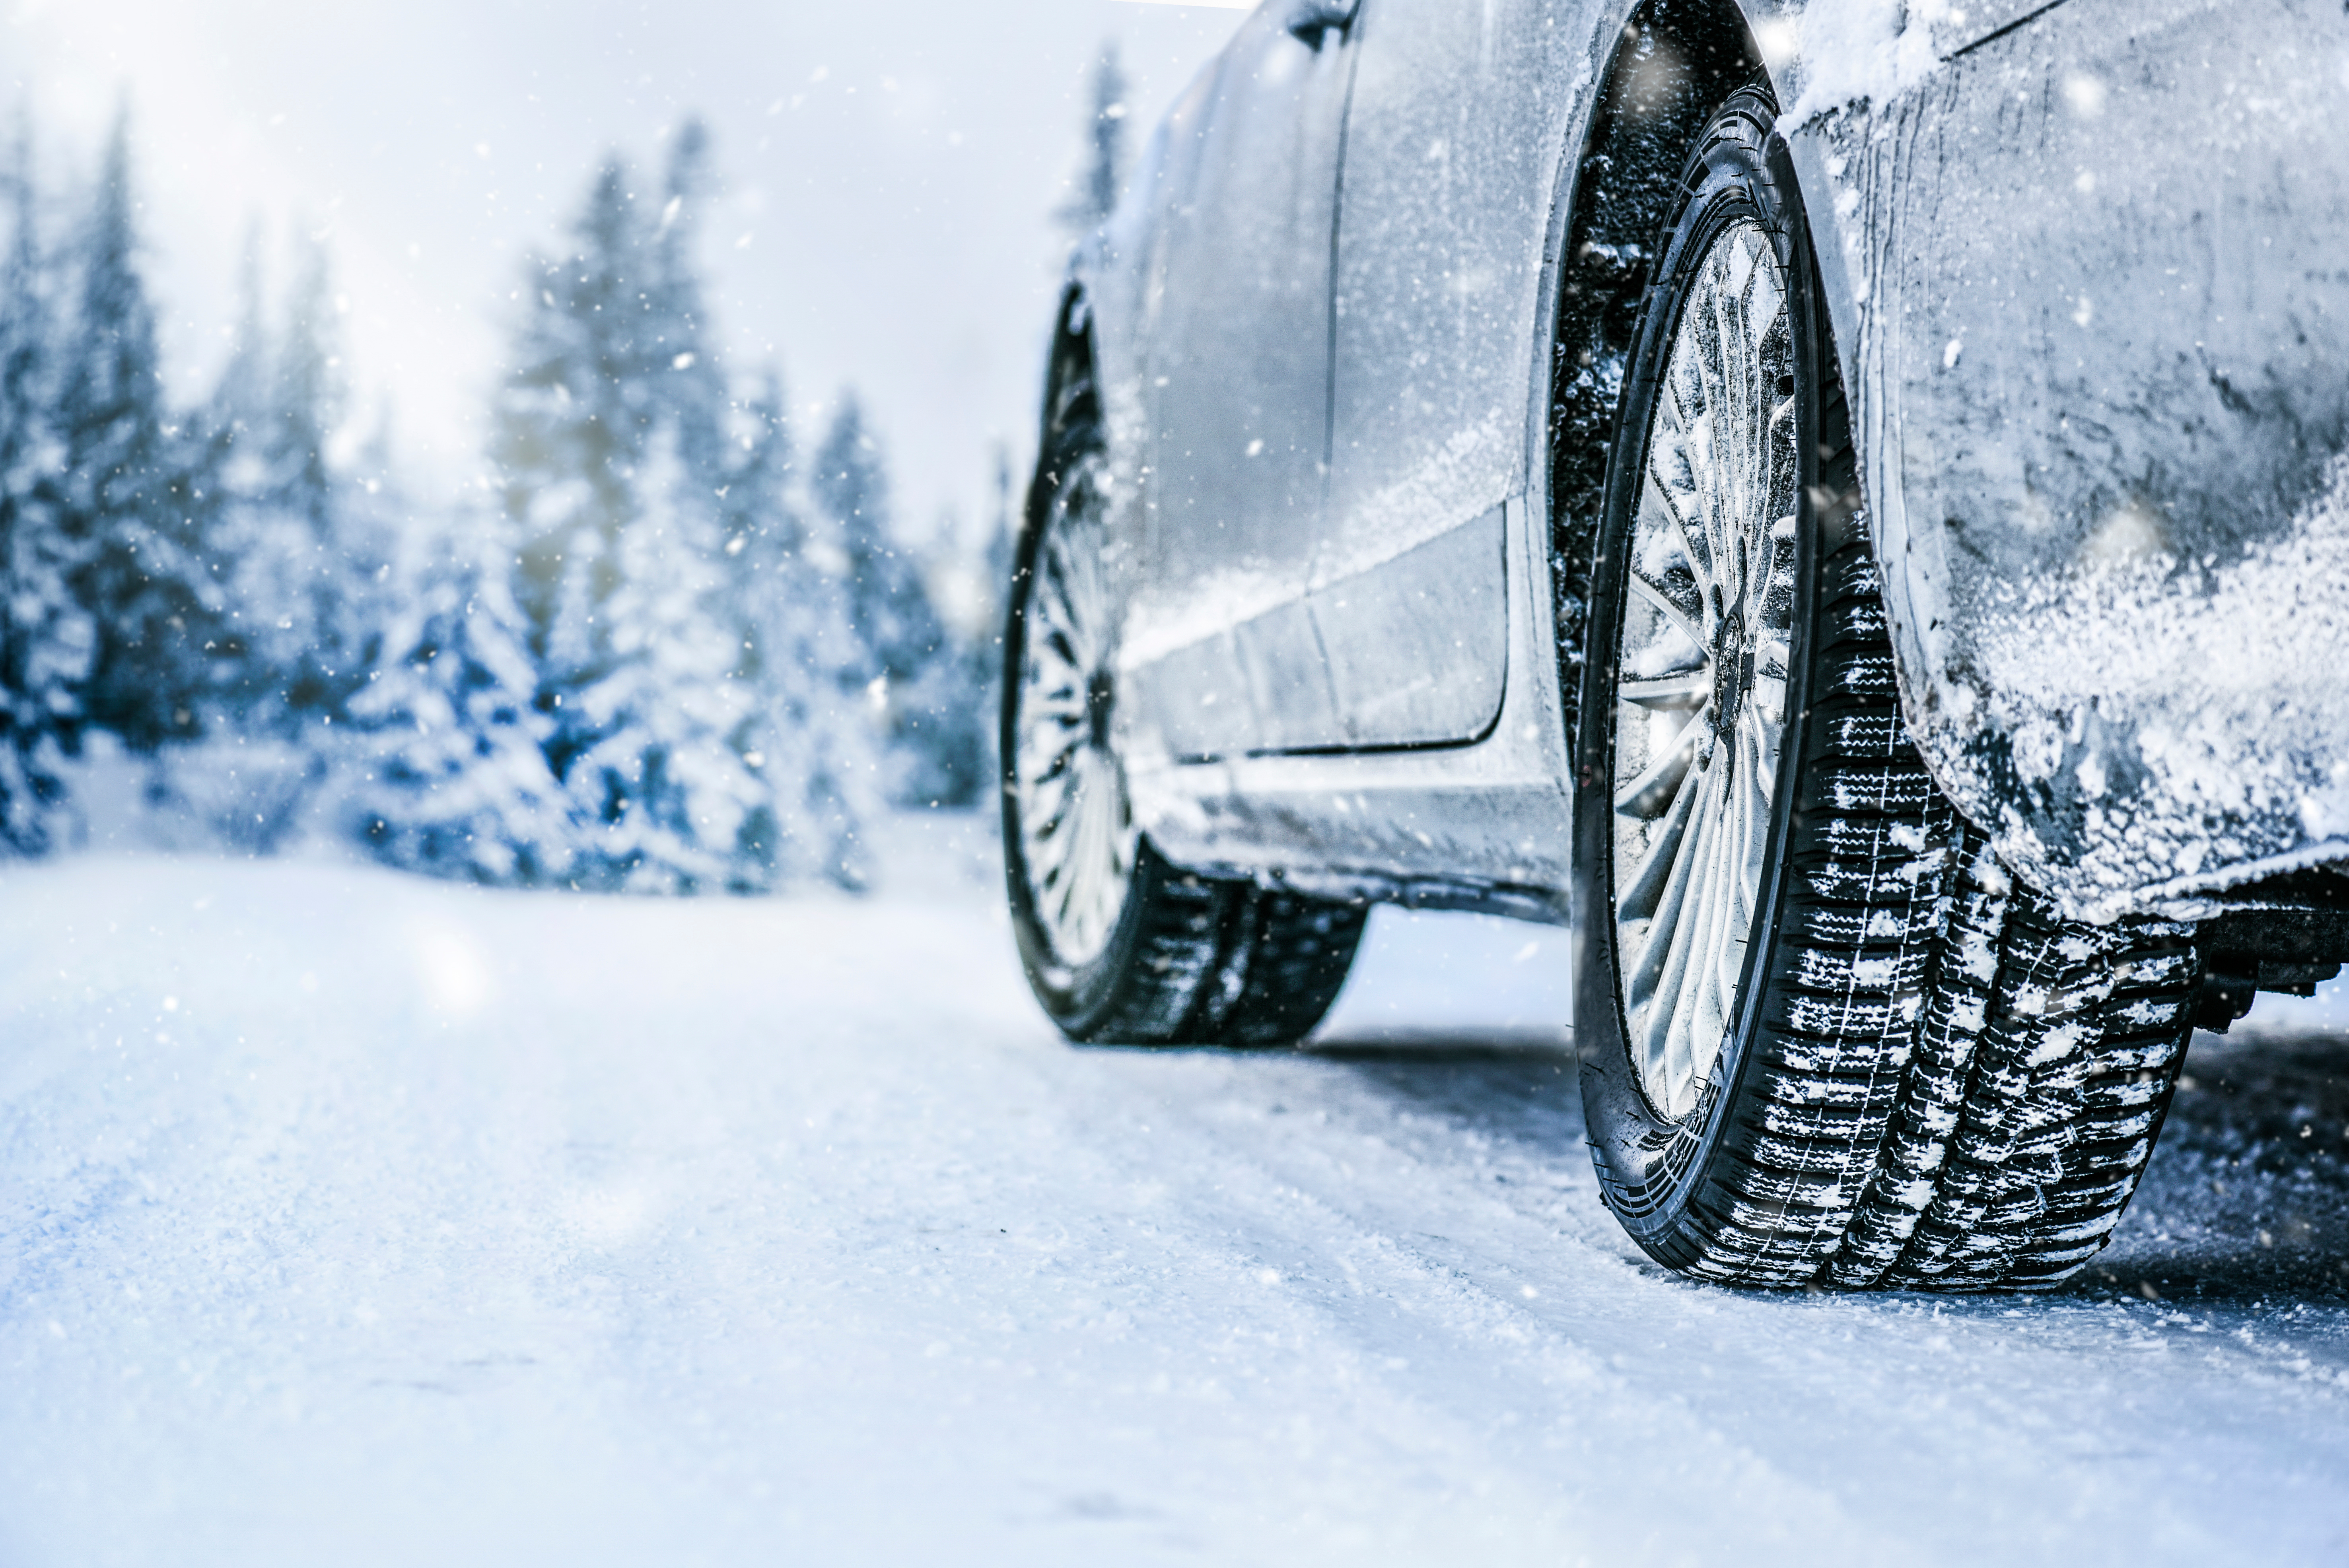 Für die kalte Winterzeit - Ein Heizlüfter für Dein Auto?